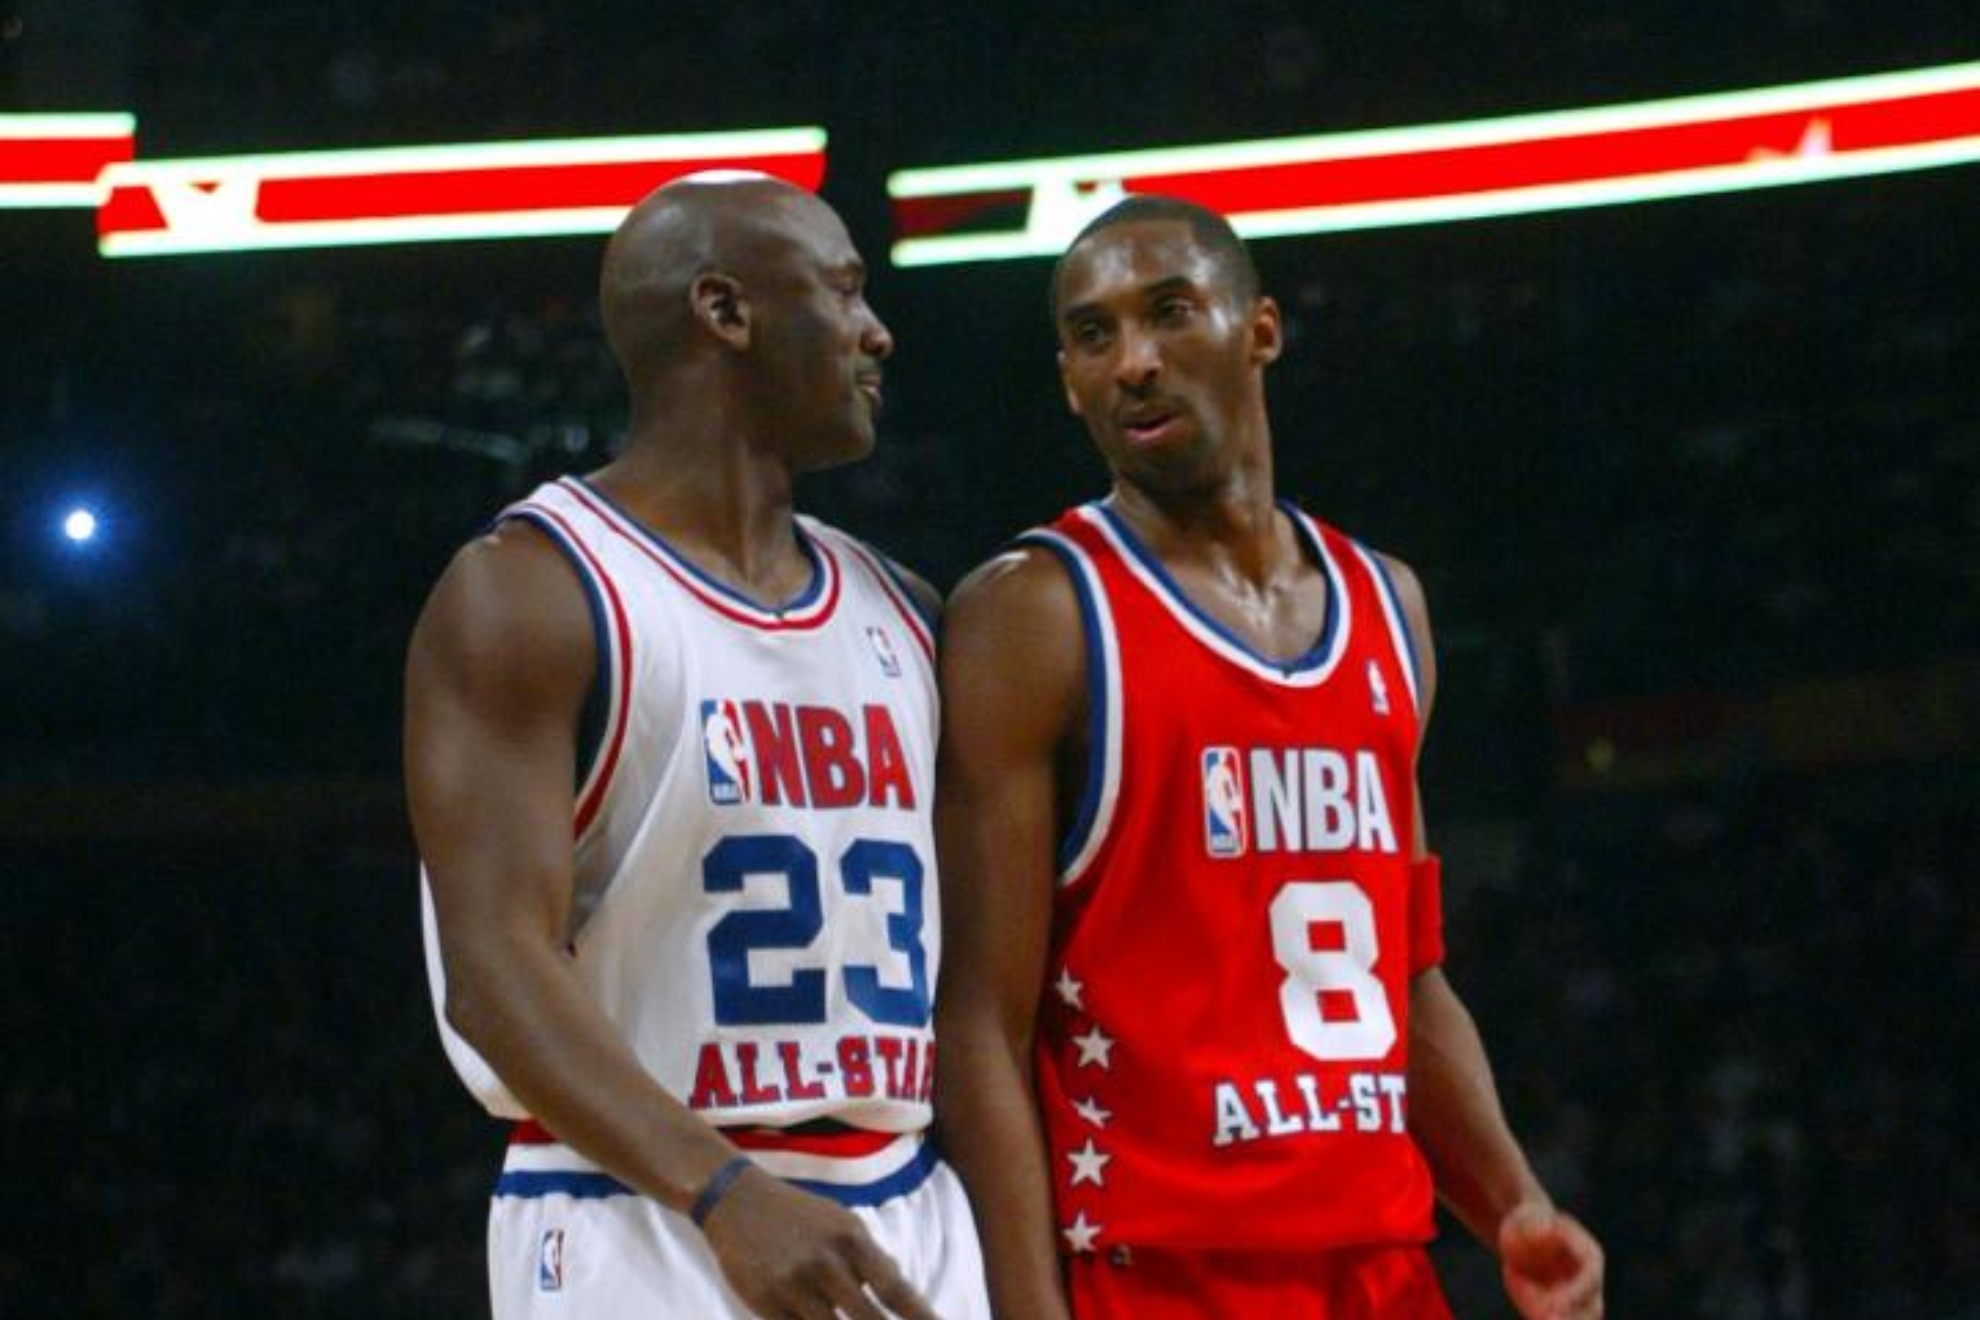 Jordan y Kobe, durante un All-Star.